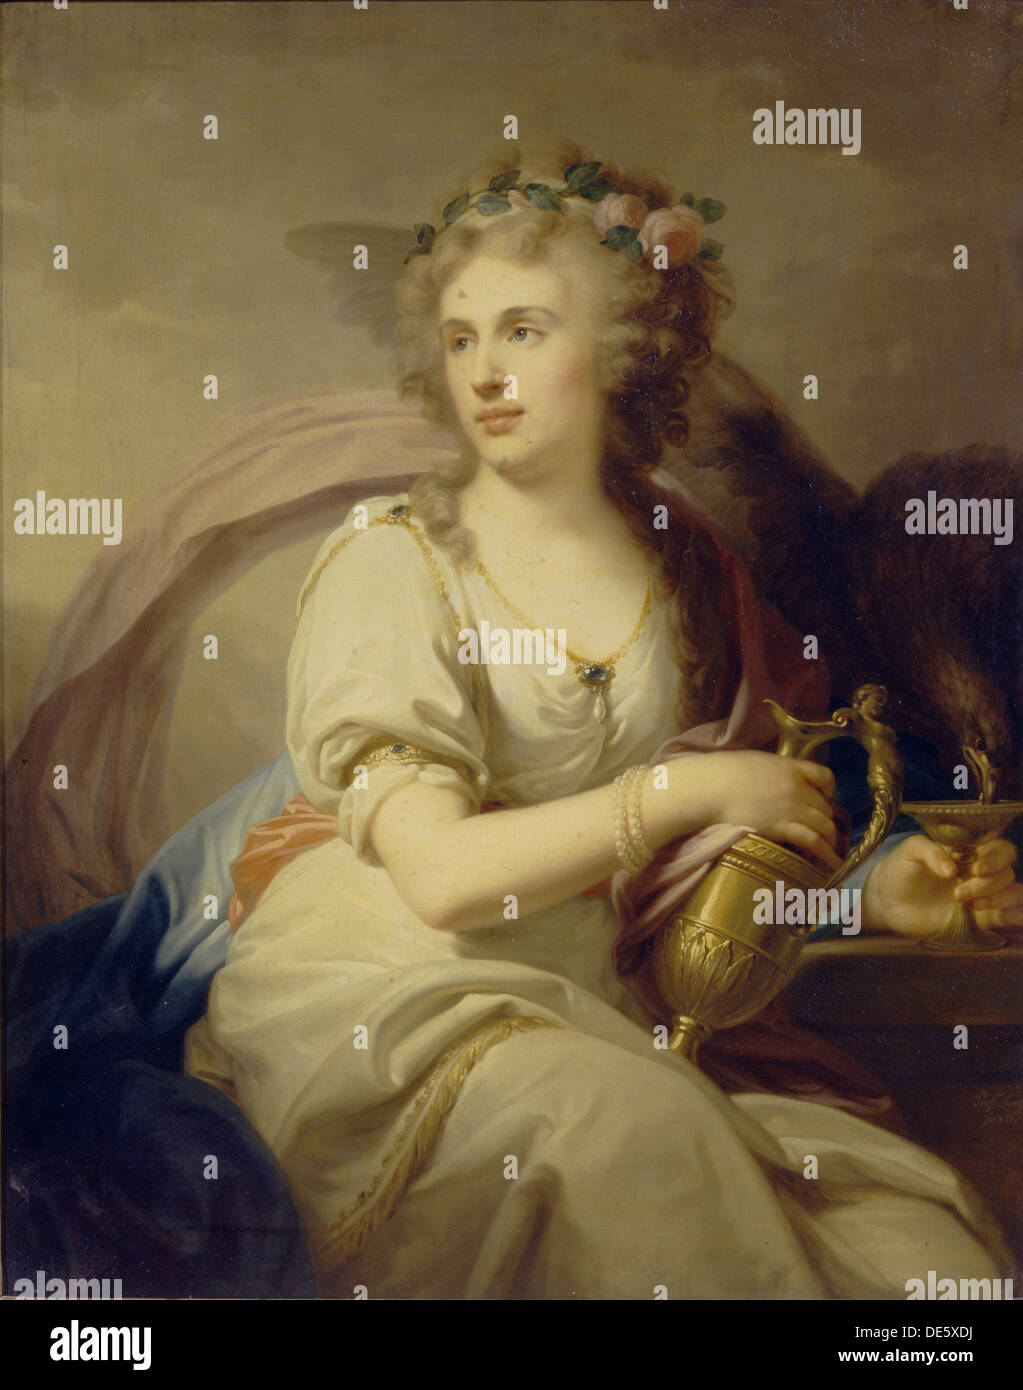 Ritratto di principessa Ekaterina Fyodorovna Dolgorukova (1769-1849) come Hebe. Artista: Lampi, Johann-Baptist von, il Vecchio (1751-1830) Foto Stock